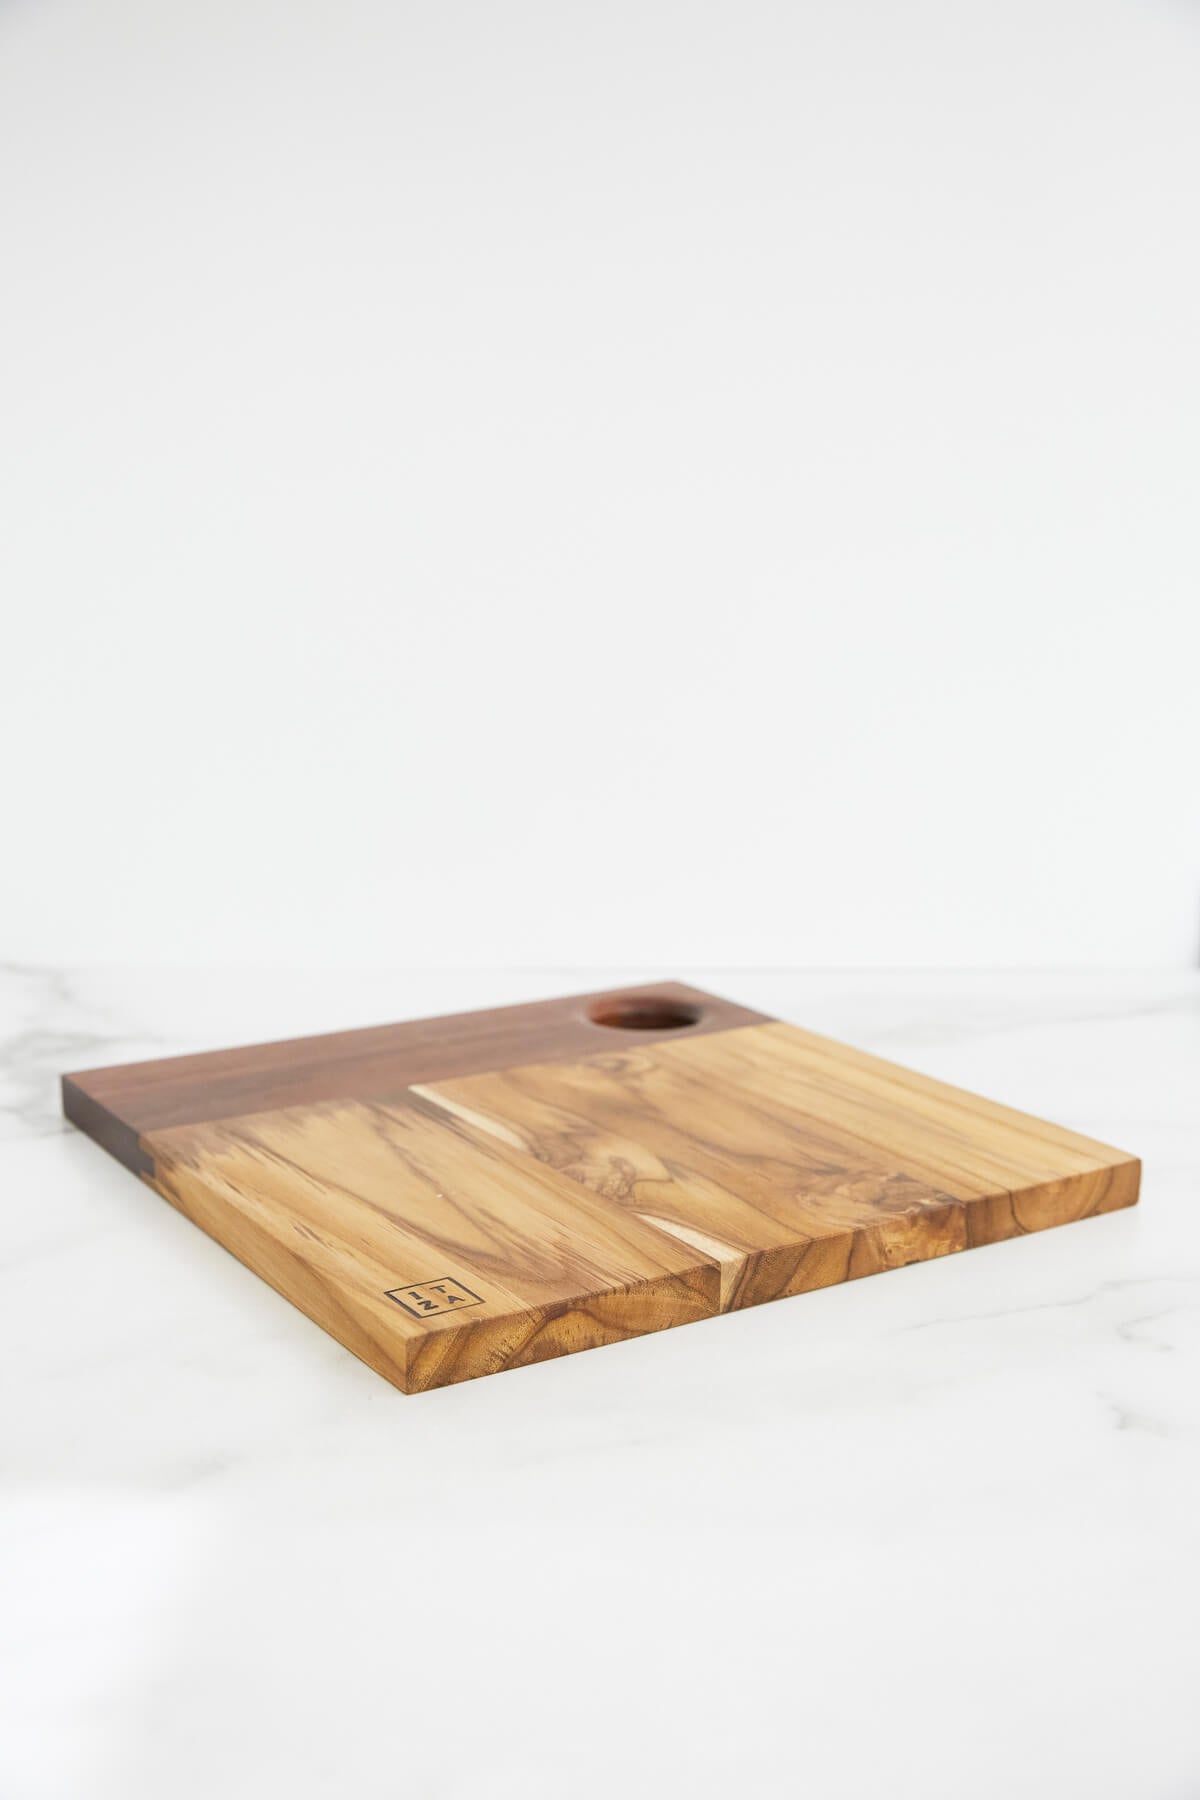 Itza Wood Small Square Serving Board